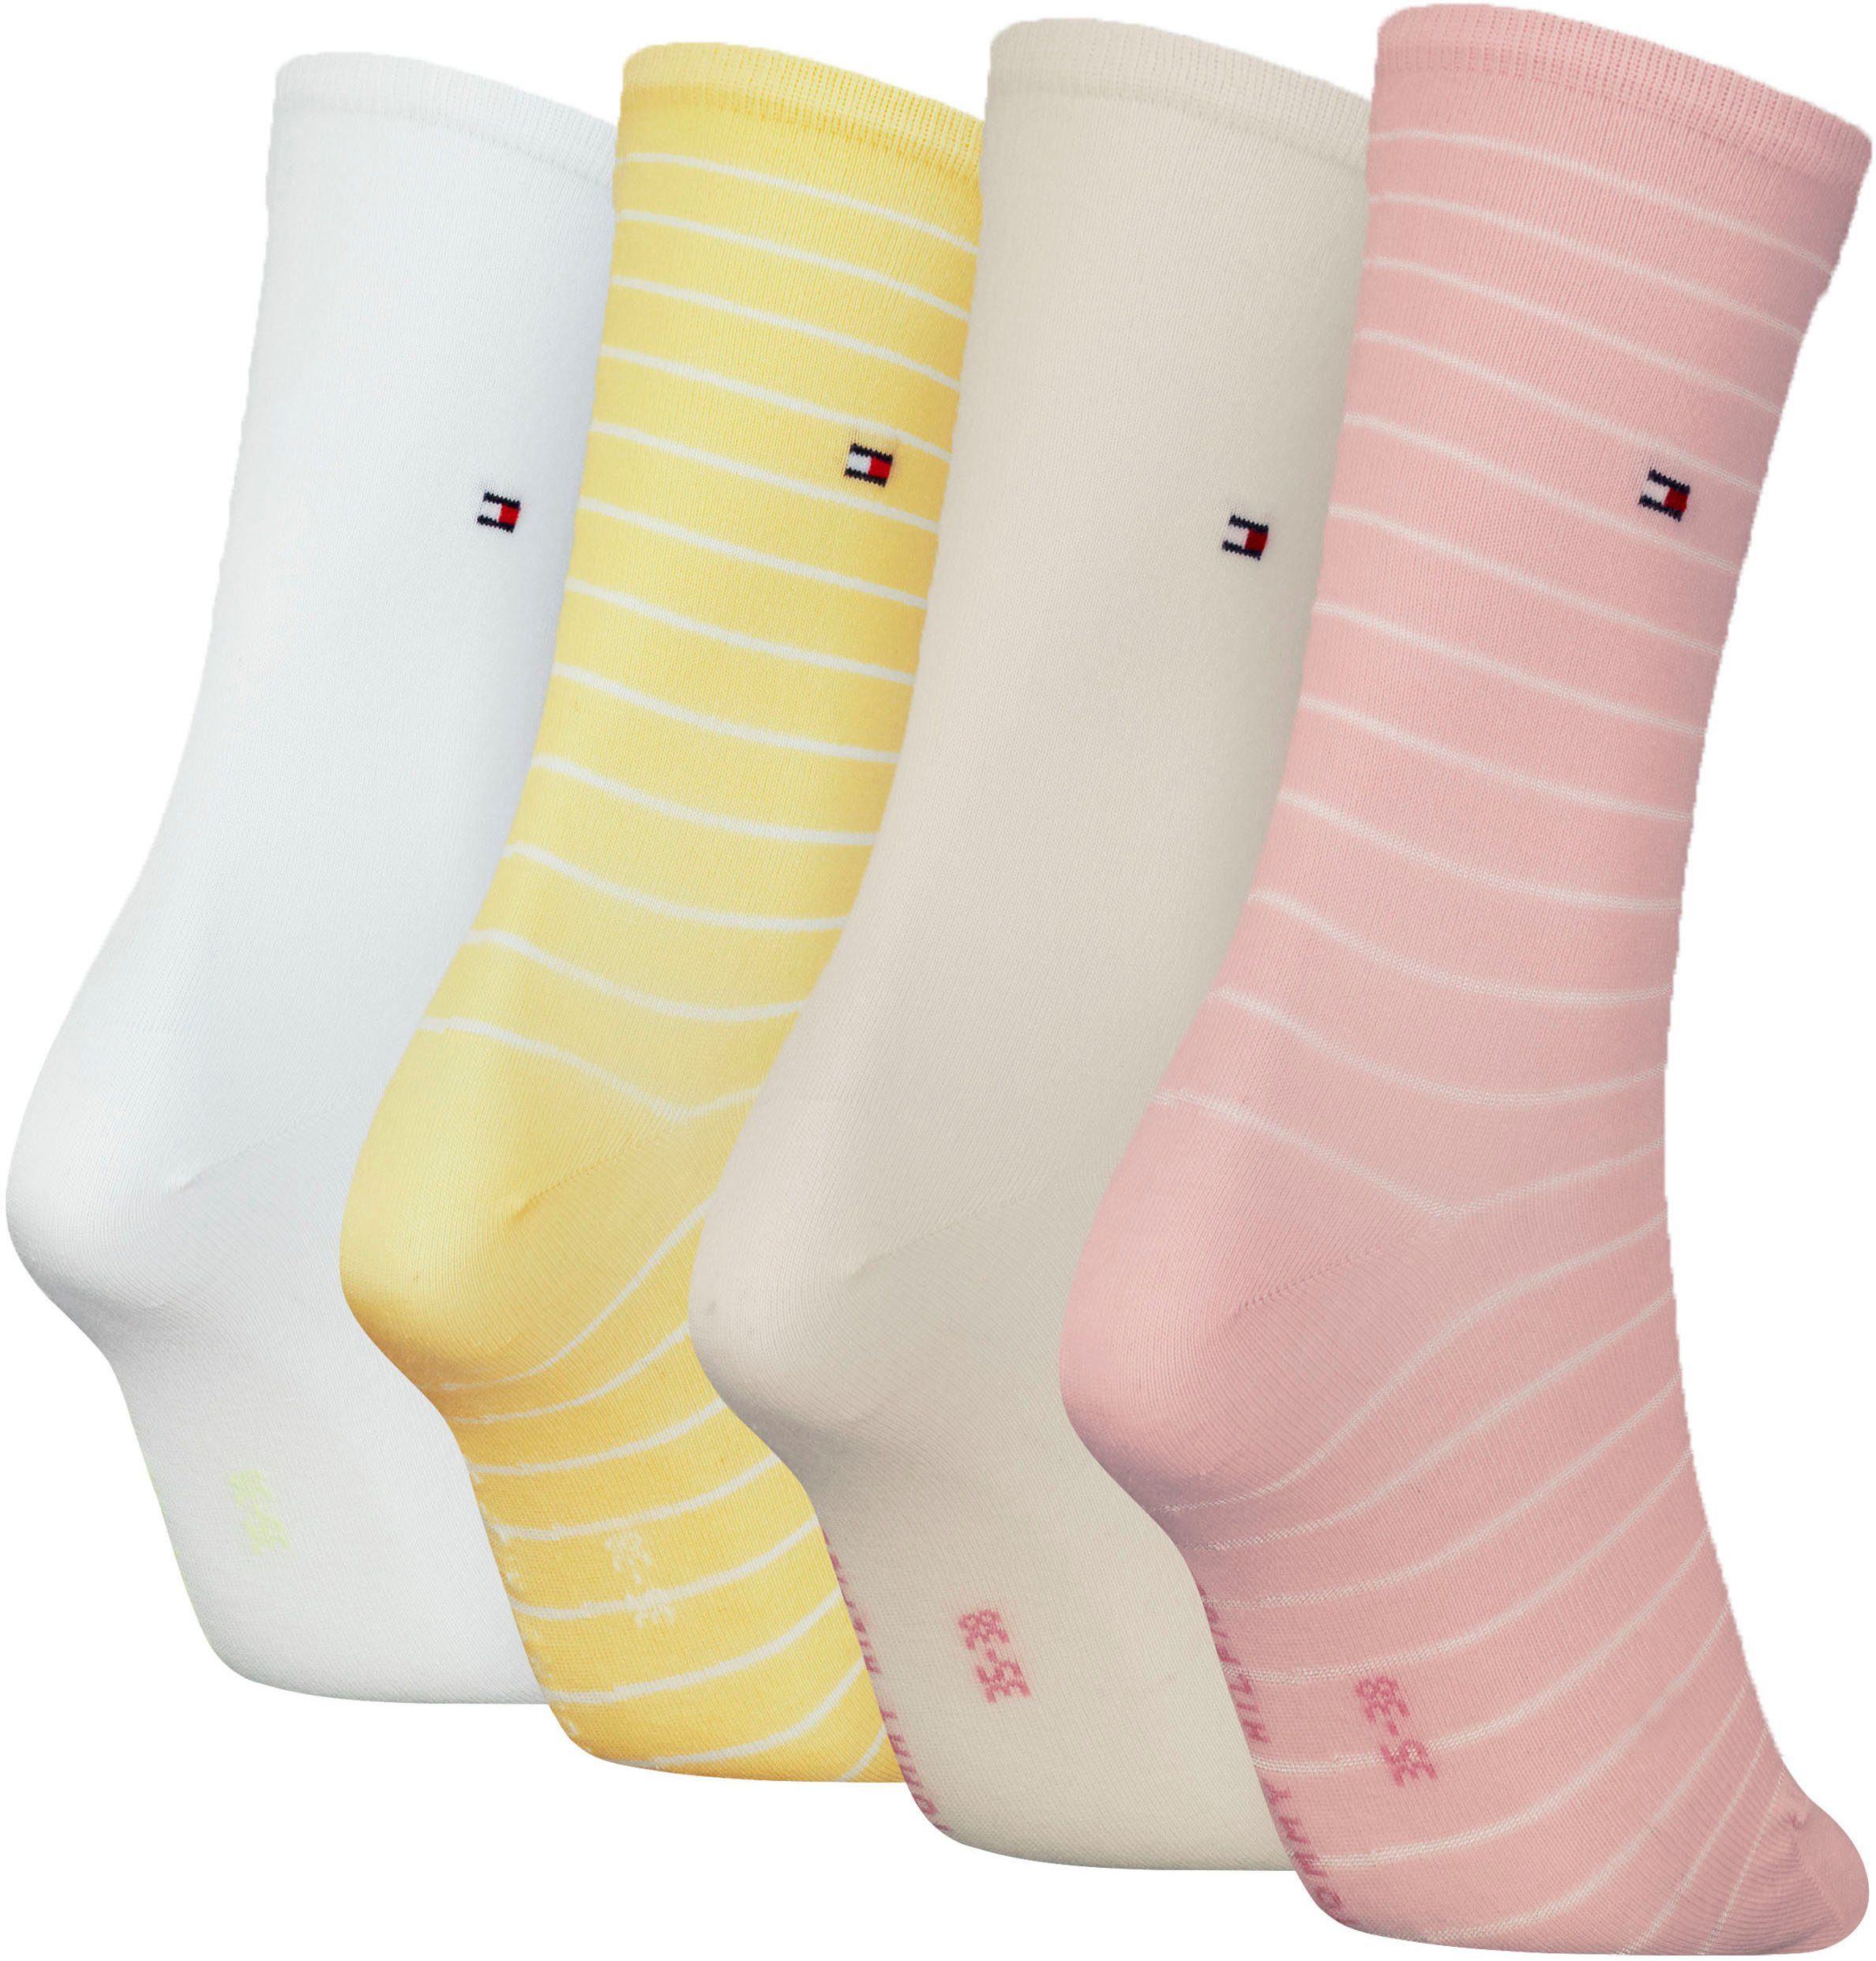 Tommy Hilfiger Socken klassisches raffiniertes Streifendesign pink-yellow-white